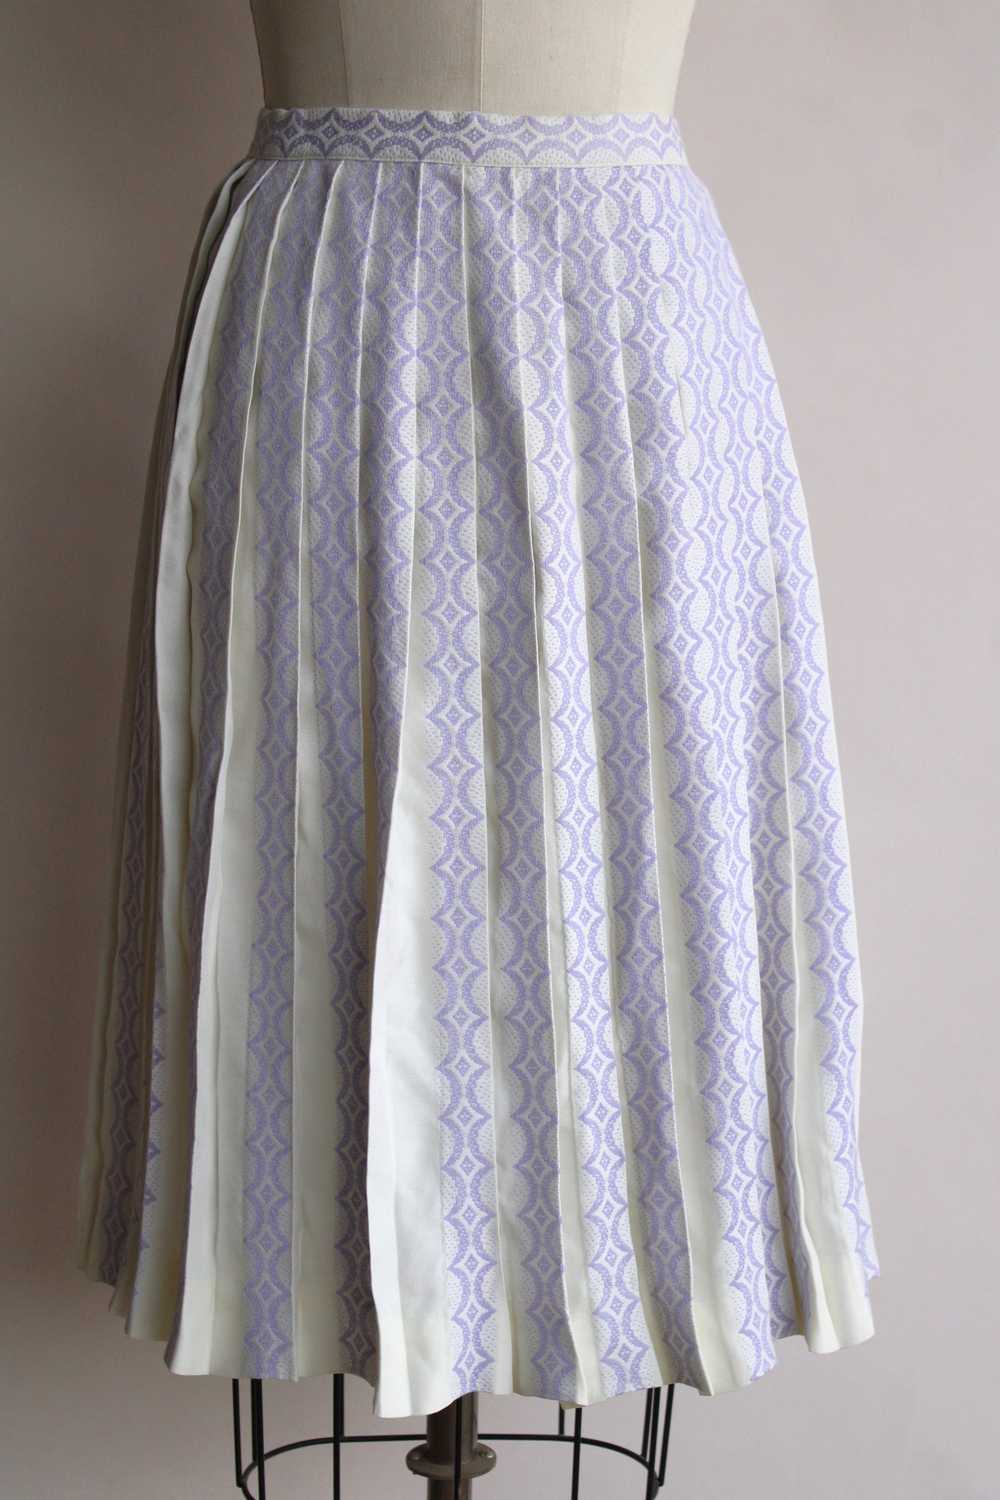 Vintage 1960s Bobbie Brooks Pleated Skirt - image 2